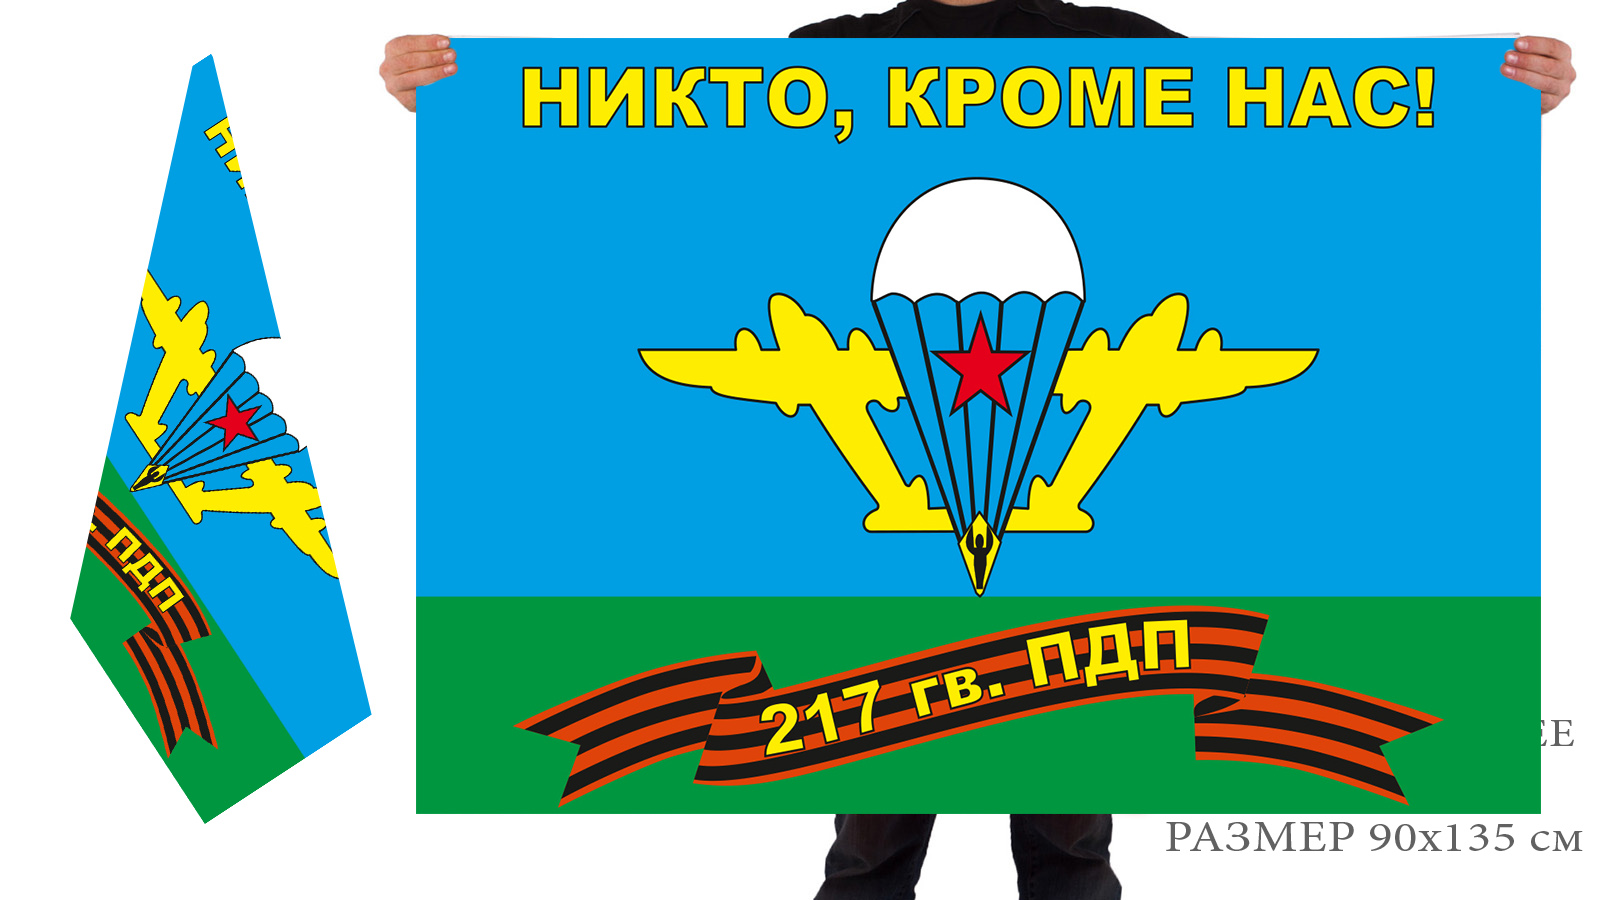 Флаг ВДВ 217 полк